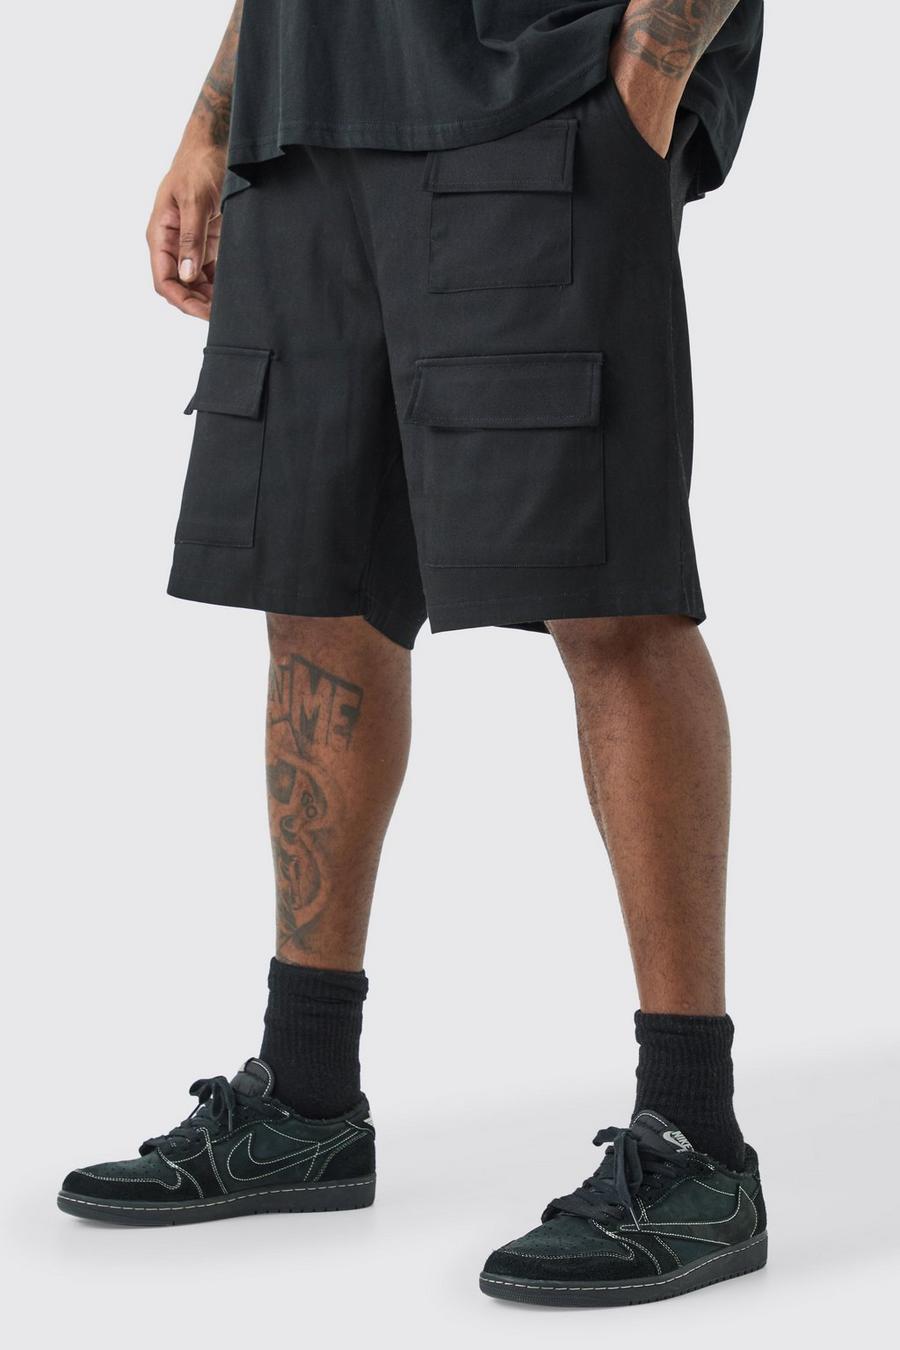 Pantalón corto Plus utilitario holgado con cintura elástica, Black